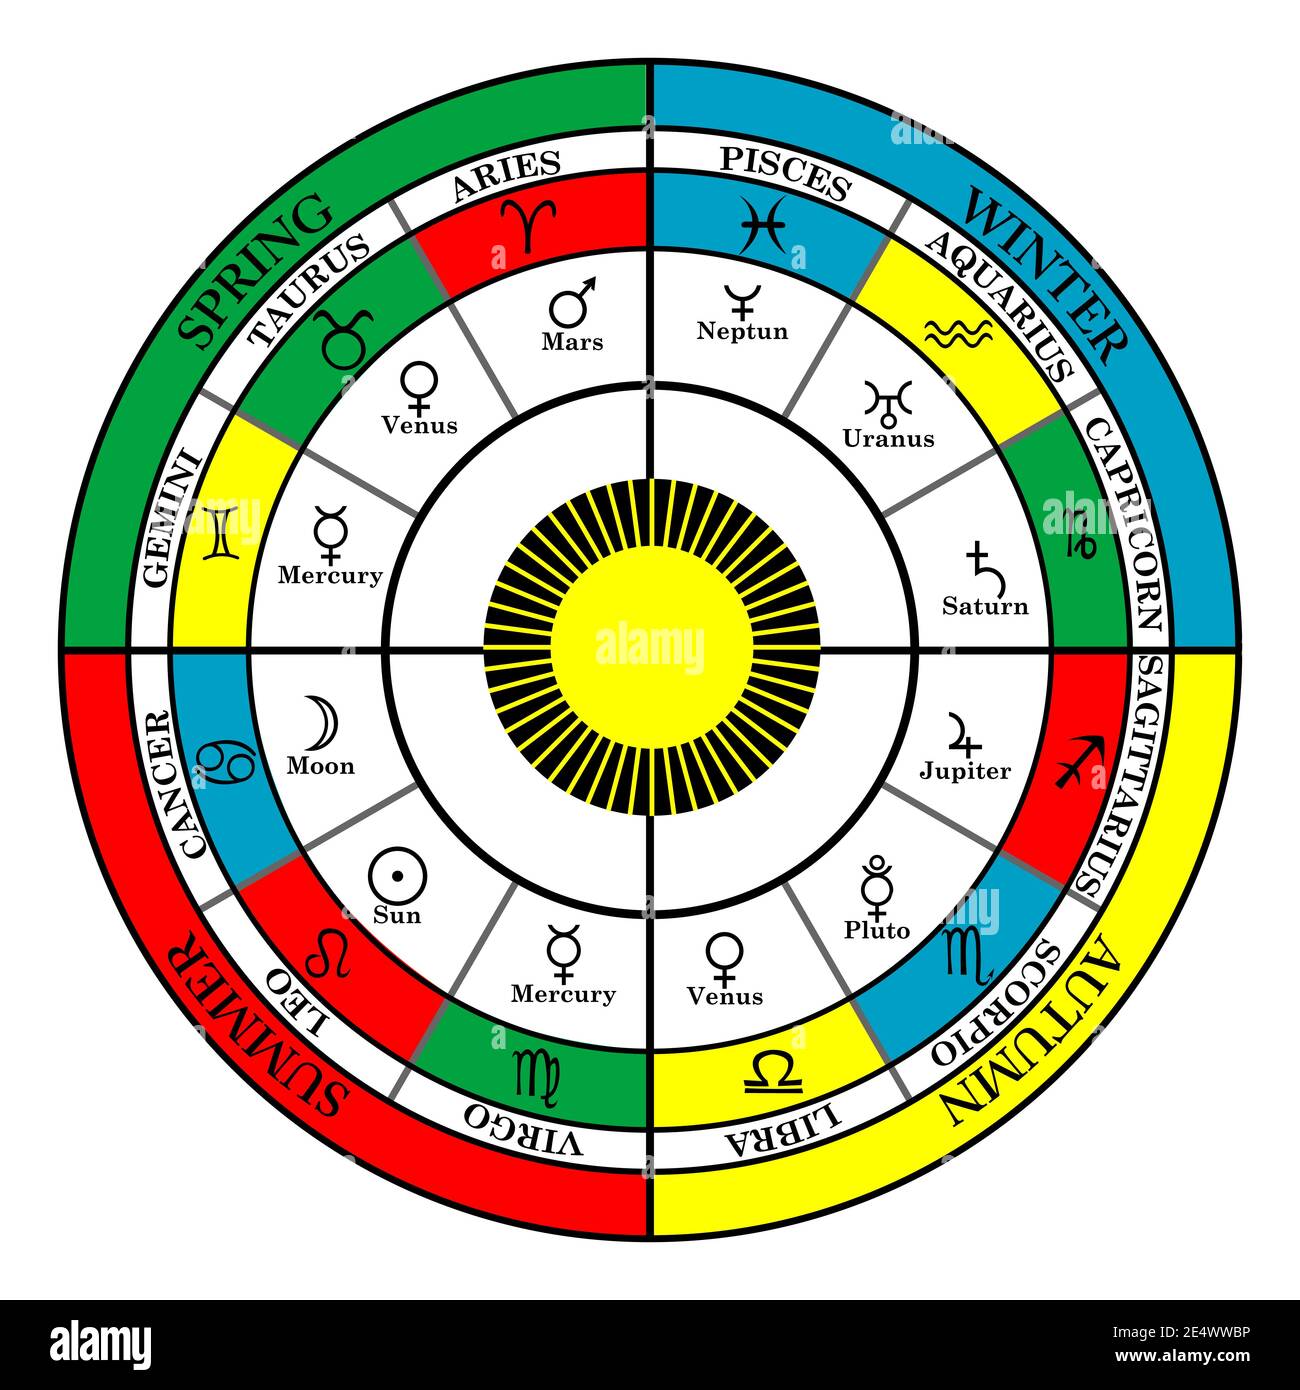 Croix colorée du zodiaque avec saisons, signes du zodiaque et maisons astrales Illustration de Vecteur